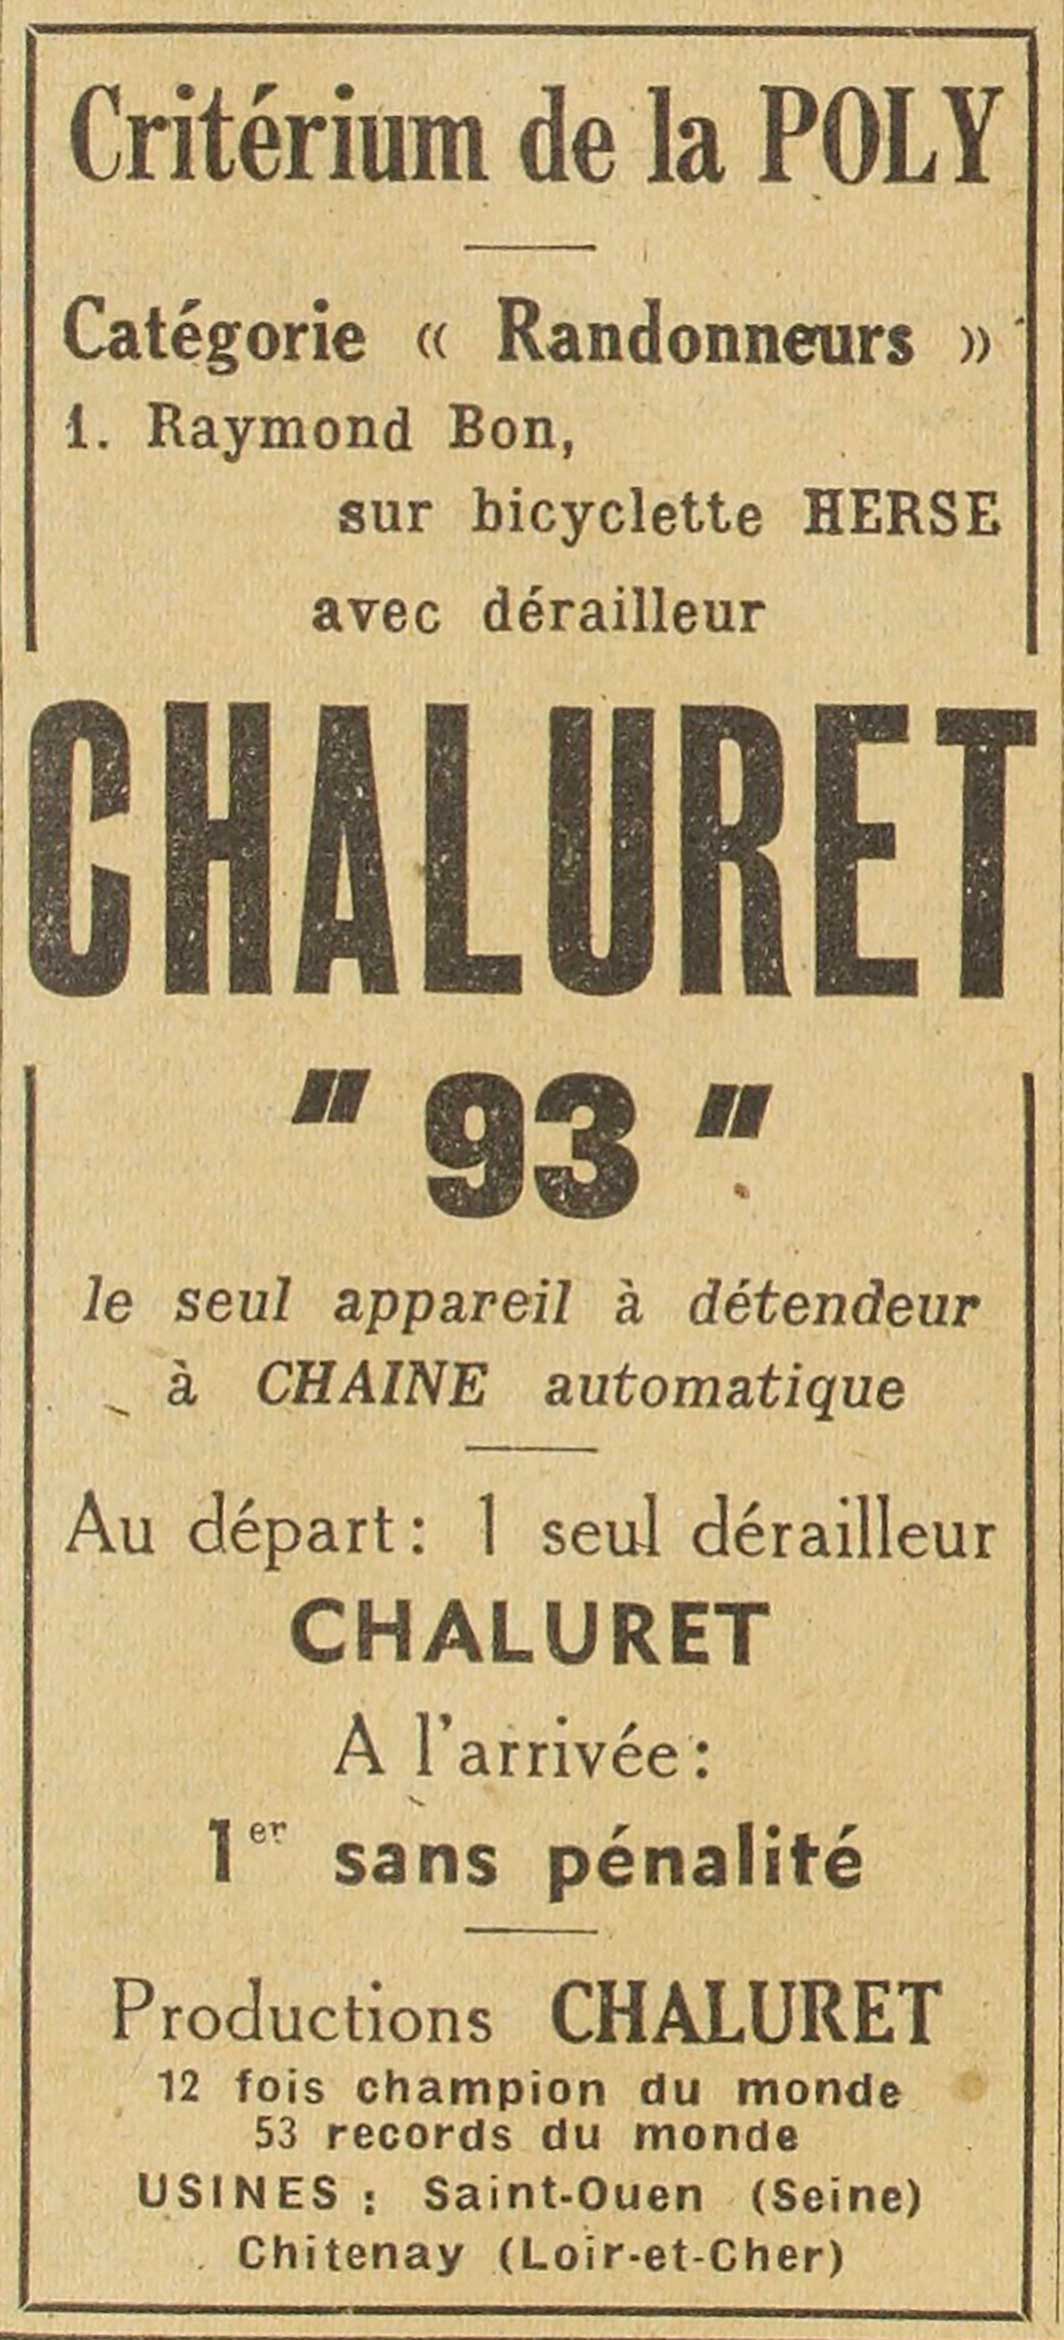 L'Auto 18th April 1944 - Chaluret advert main image